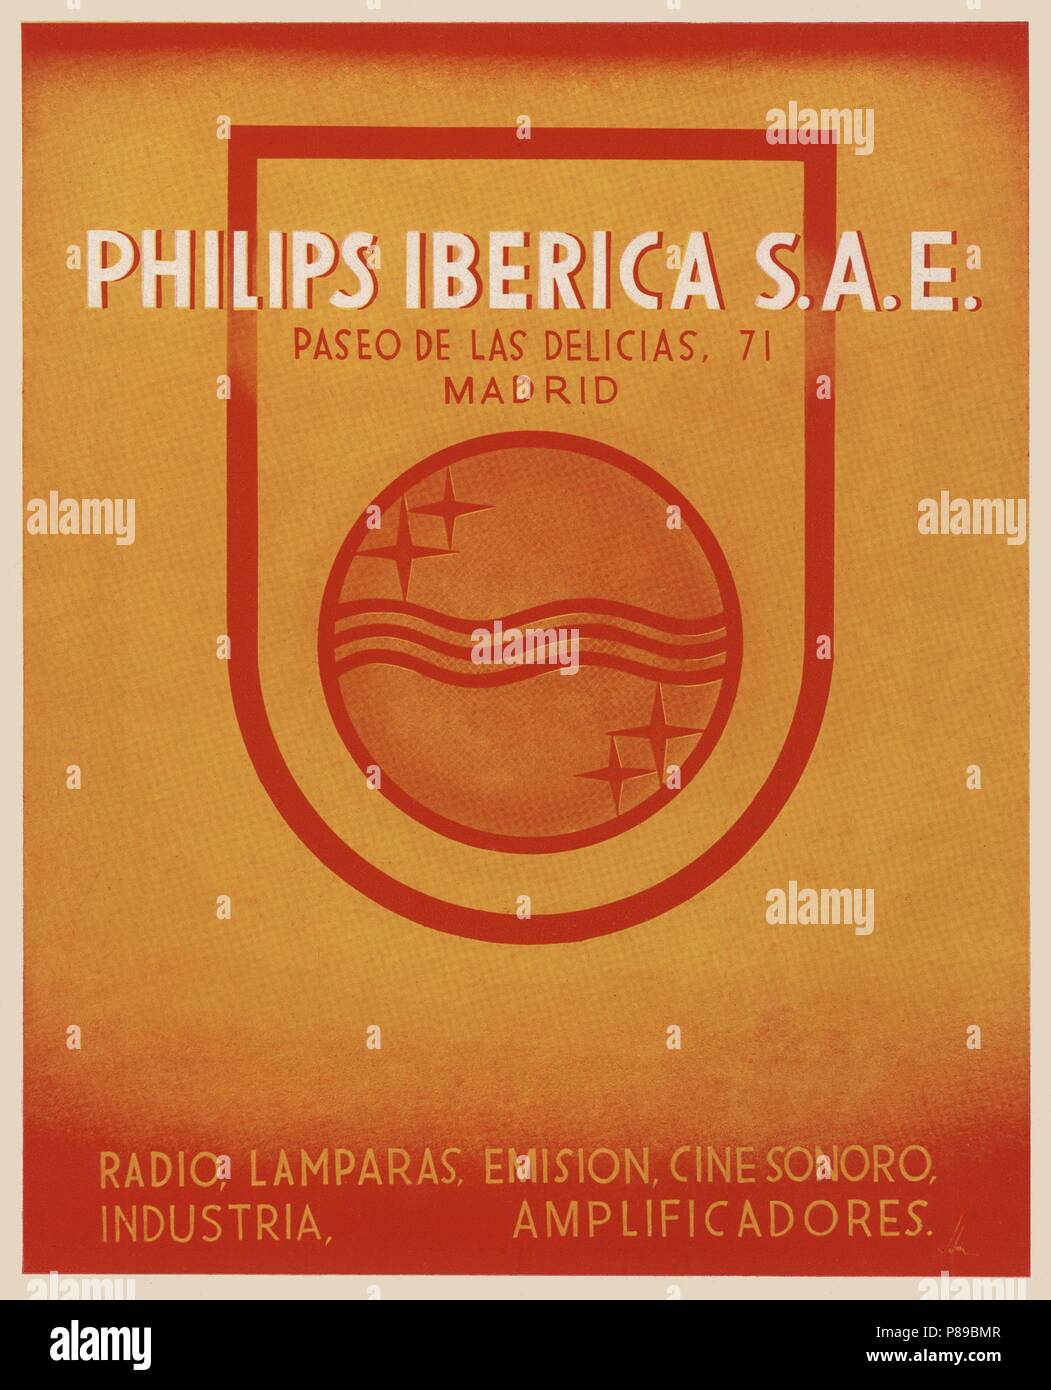 Publicidad. Philips Ibérica S.A.E. Madrid, año 1940 Stock Photo - Alamy